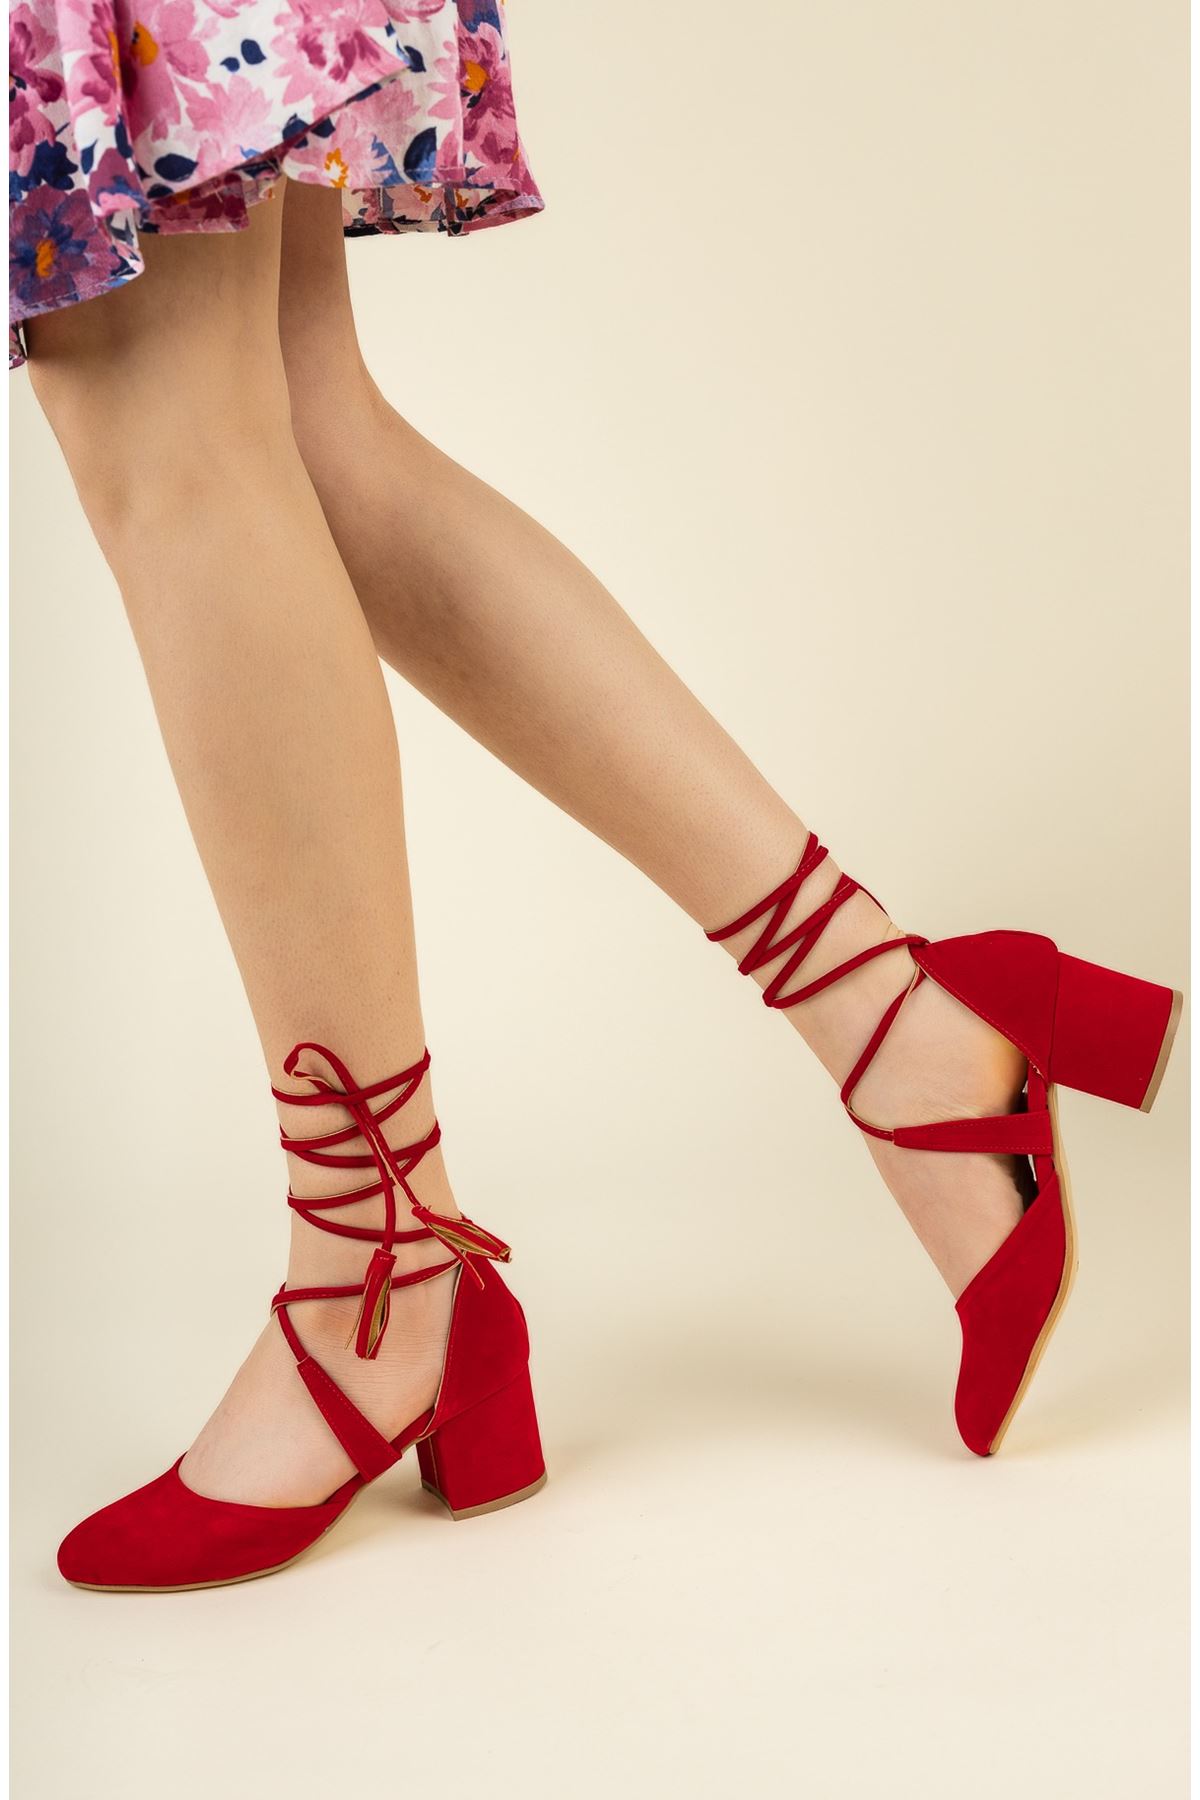 Kadın Vadde Kısa Topuklu Kırmızı Süet Ayakkabı - Kırmızı